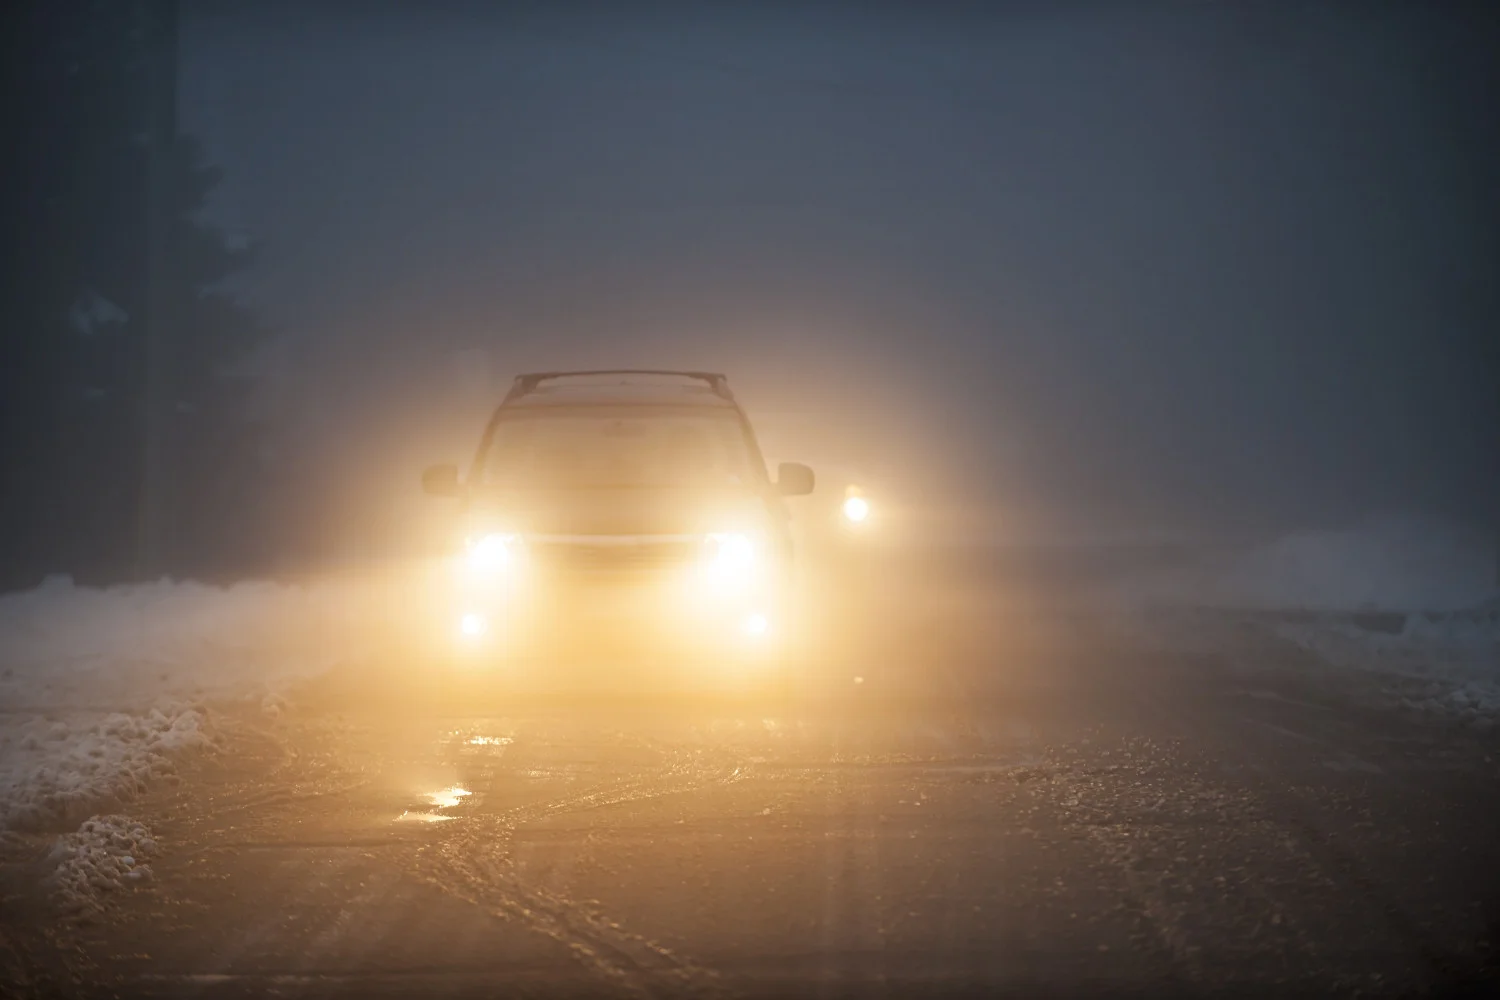 Словенский автомобиль во время движения в снегу и тумане с включенными фарами